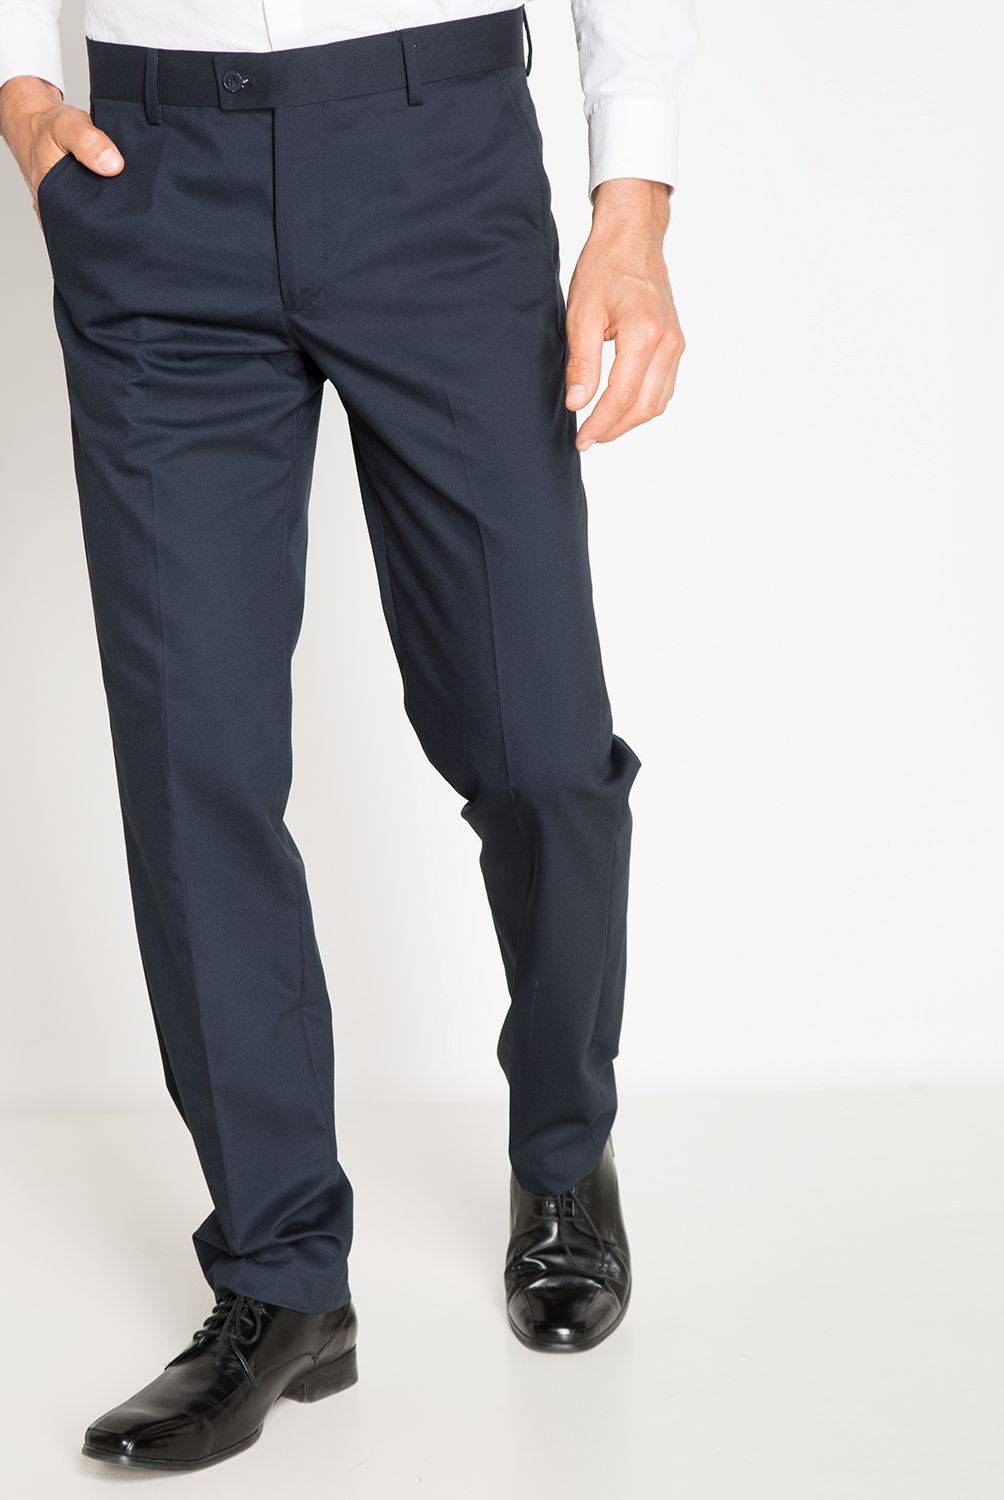 NEWPORT - Pantalon de Vestir Slim Hombre